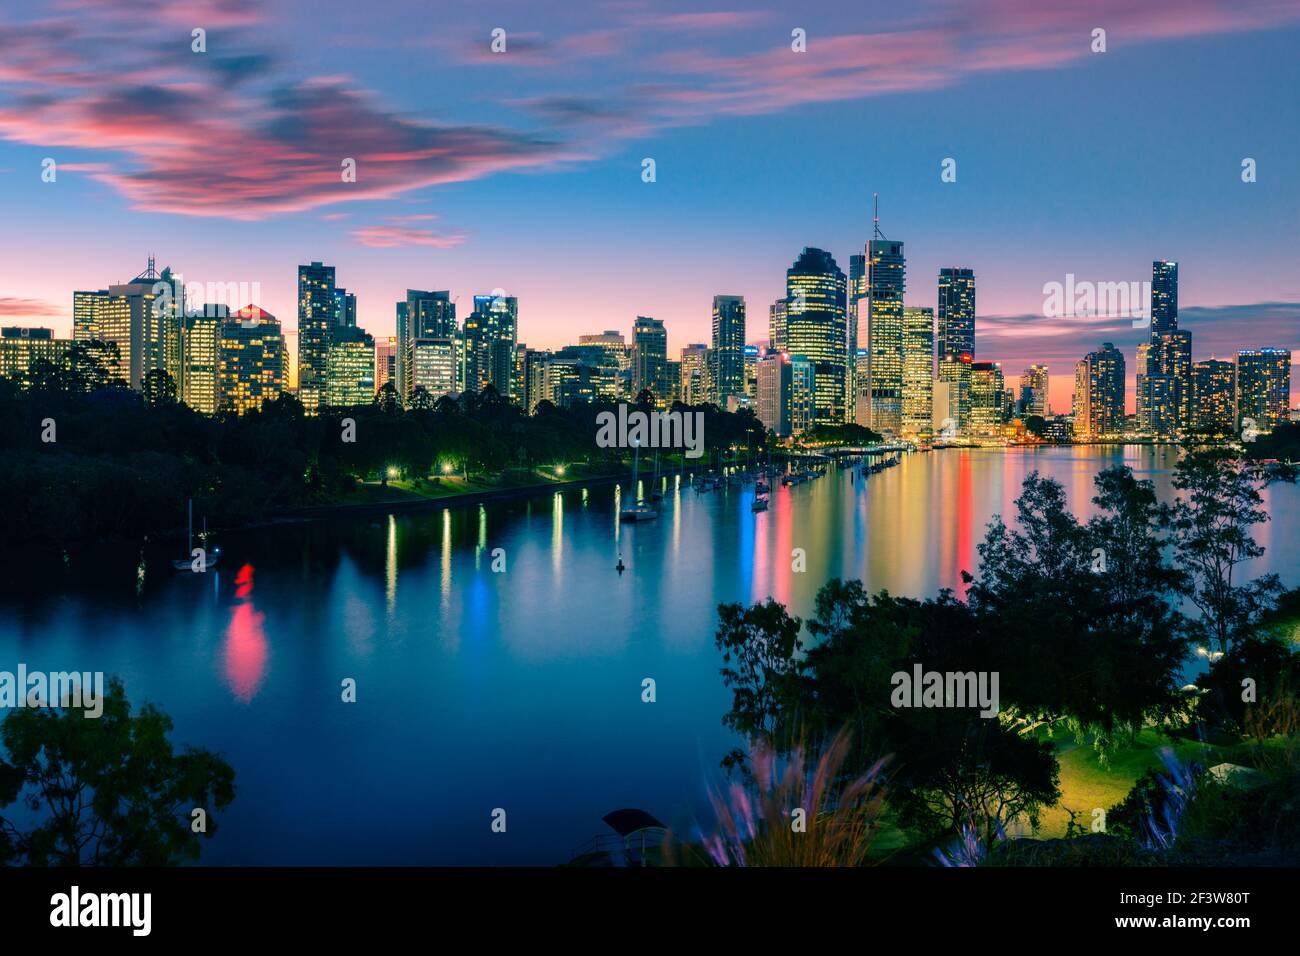 Vue sur la ville et la rivière de Brisbane au coucher du soleil depuis Kangaroo point. Brisbane est la capitale de l'État du Queensland, en Australie. Banque D'Images